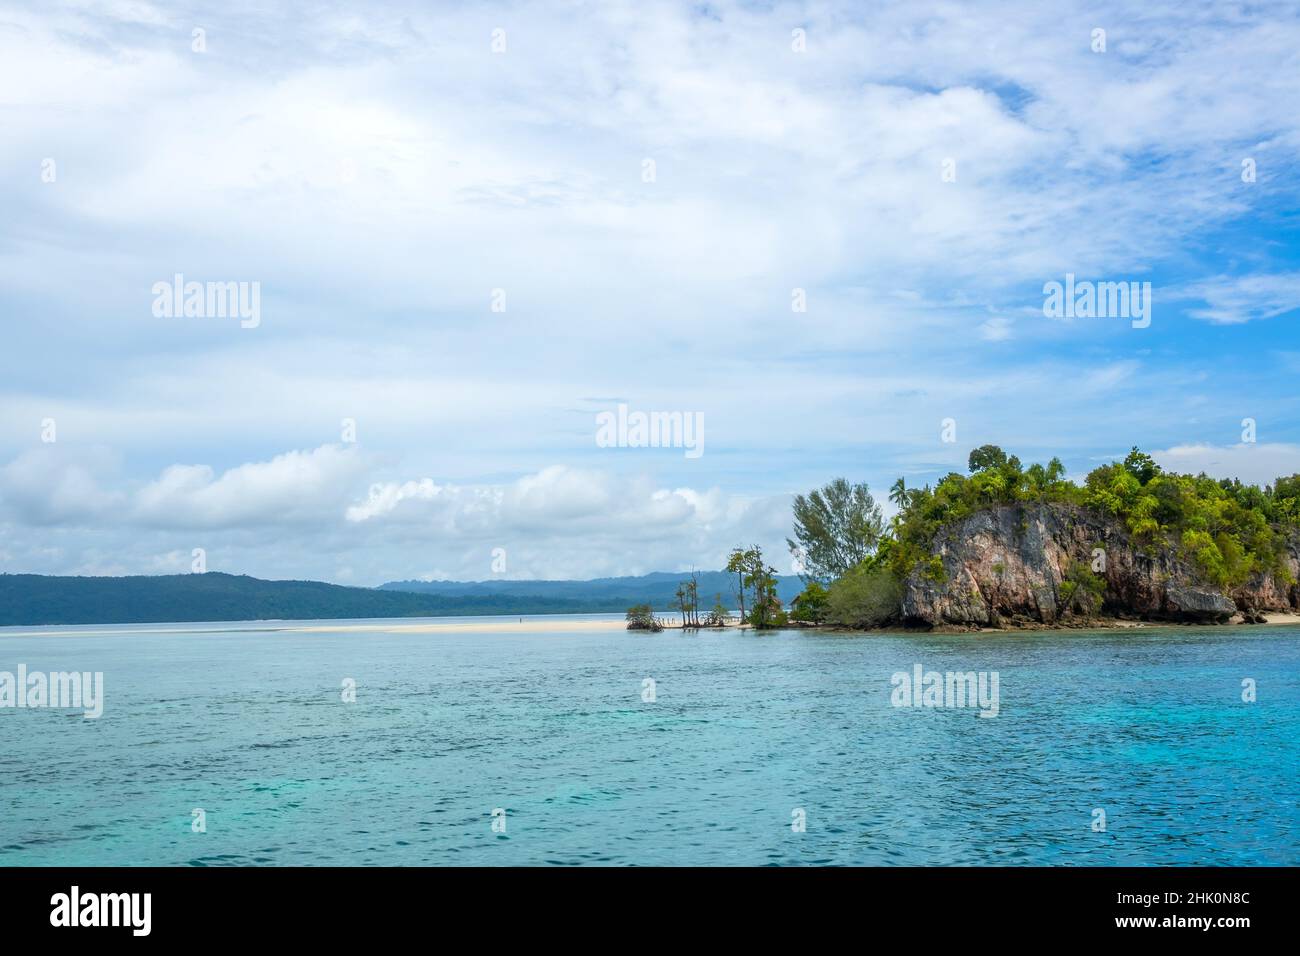 Indonesische Insel im Raja Ampat Archipel. Sandspieß an der Küste einer tropischen Insel. Einsame menschliche Figur. Die Hütte versteckt sich hinter dem Stockfoto